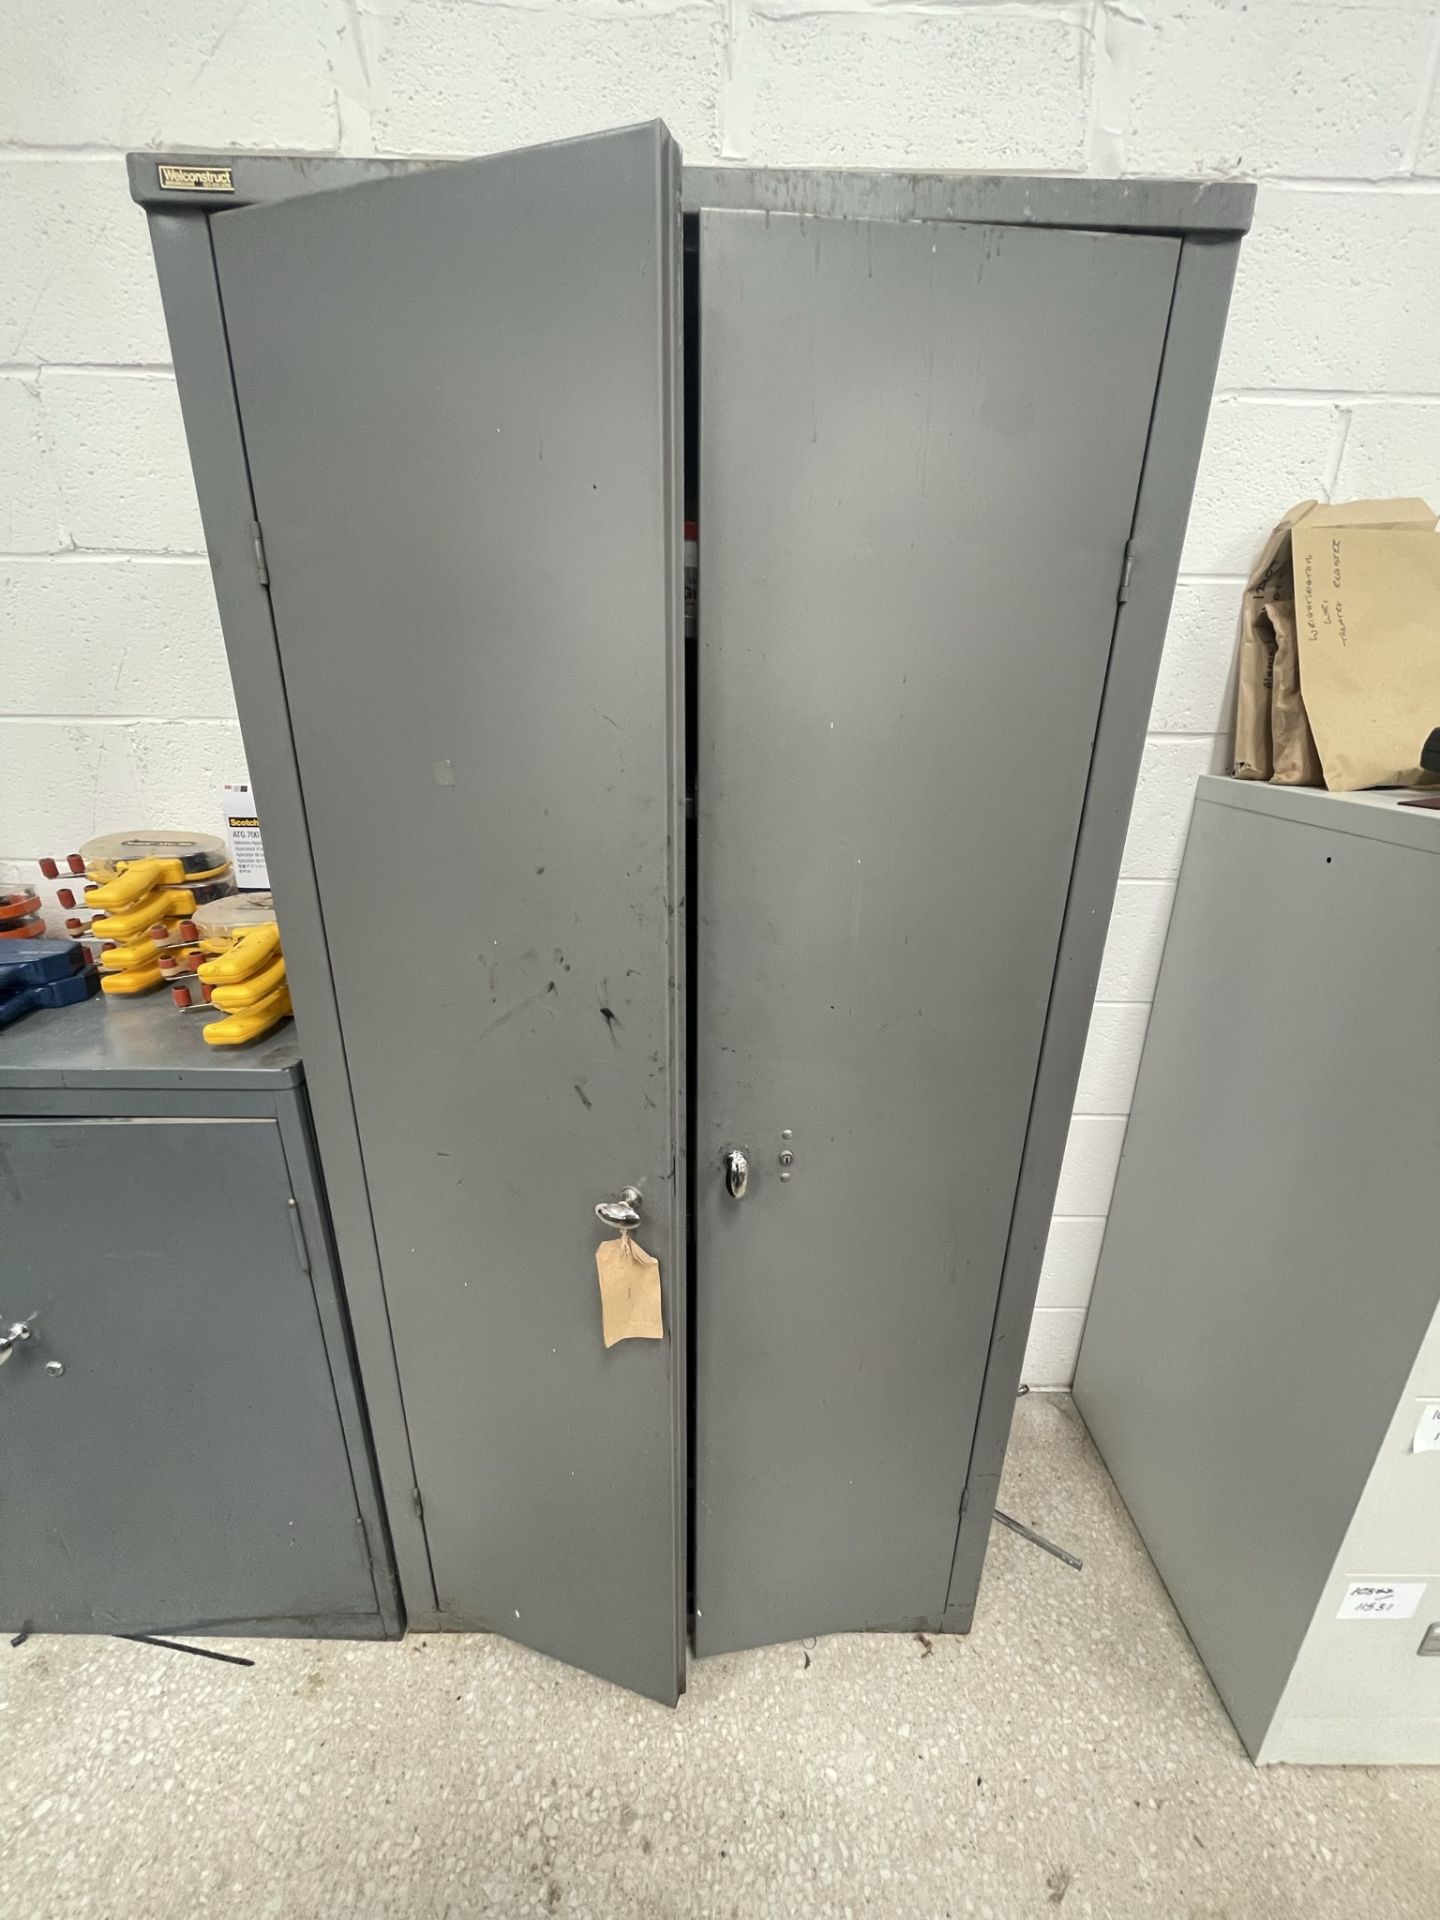 2 x Metal Double Door Storage Cabinets w/ Contents - Image 4 of 5